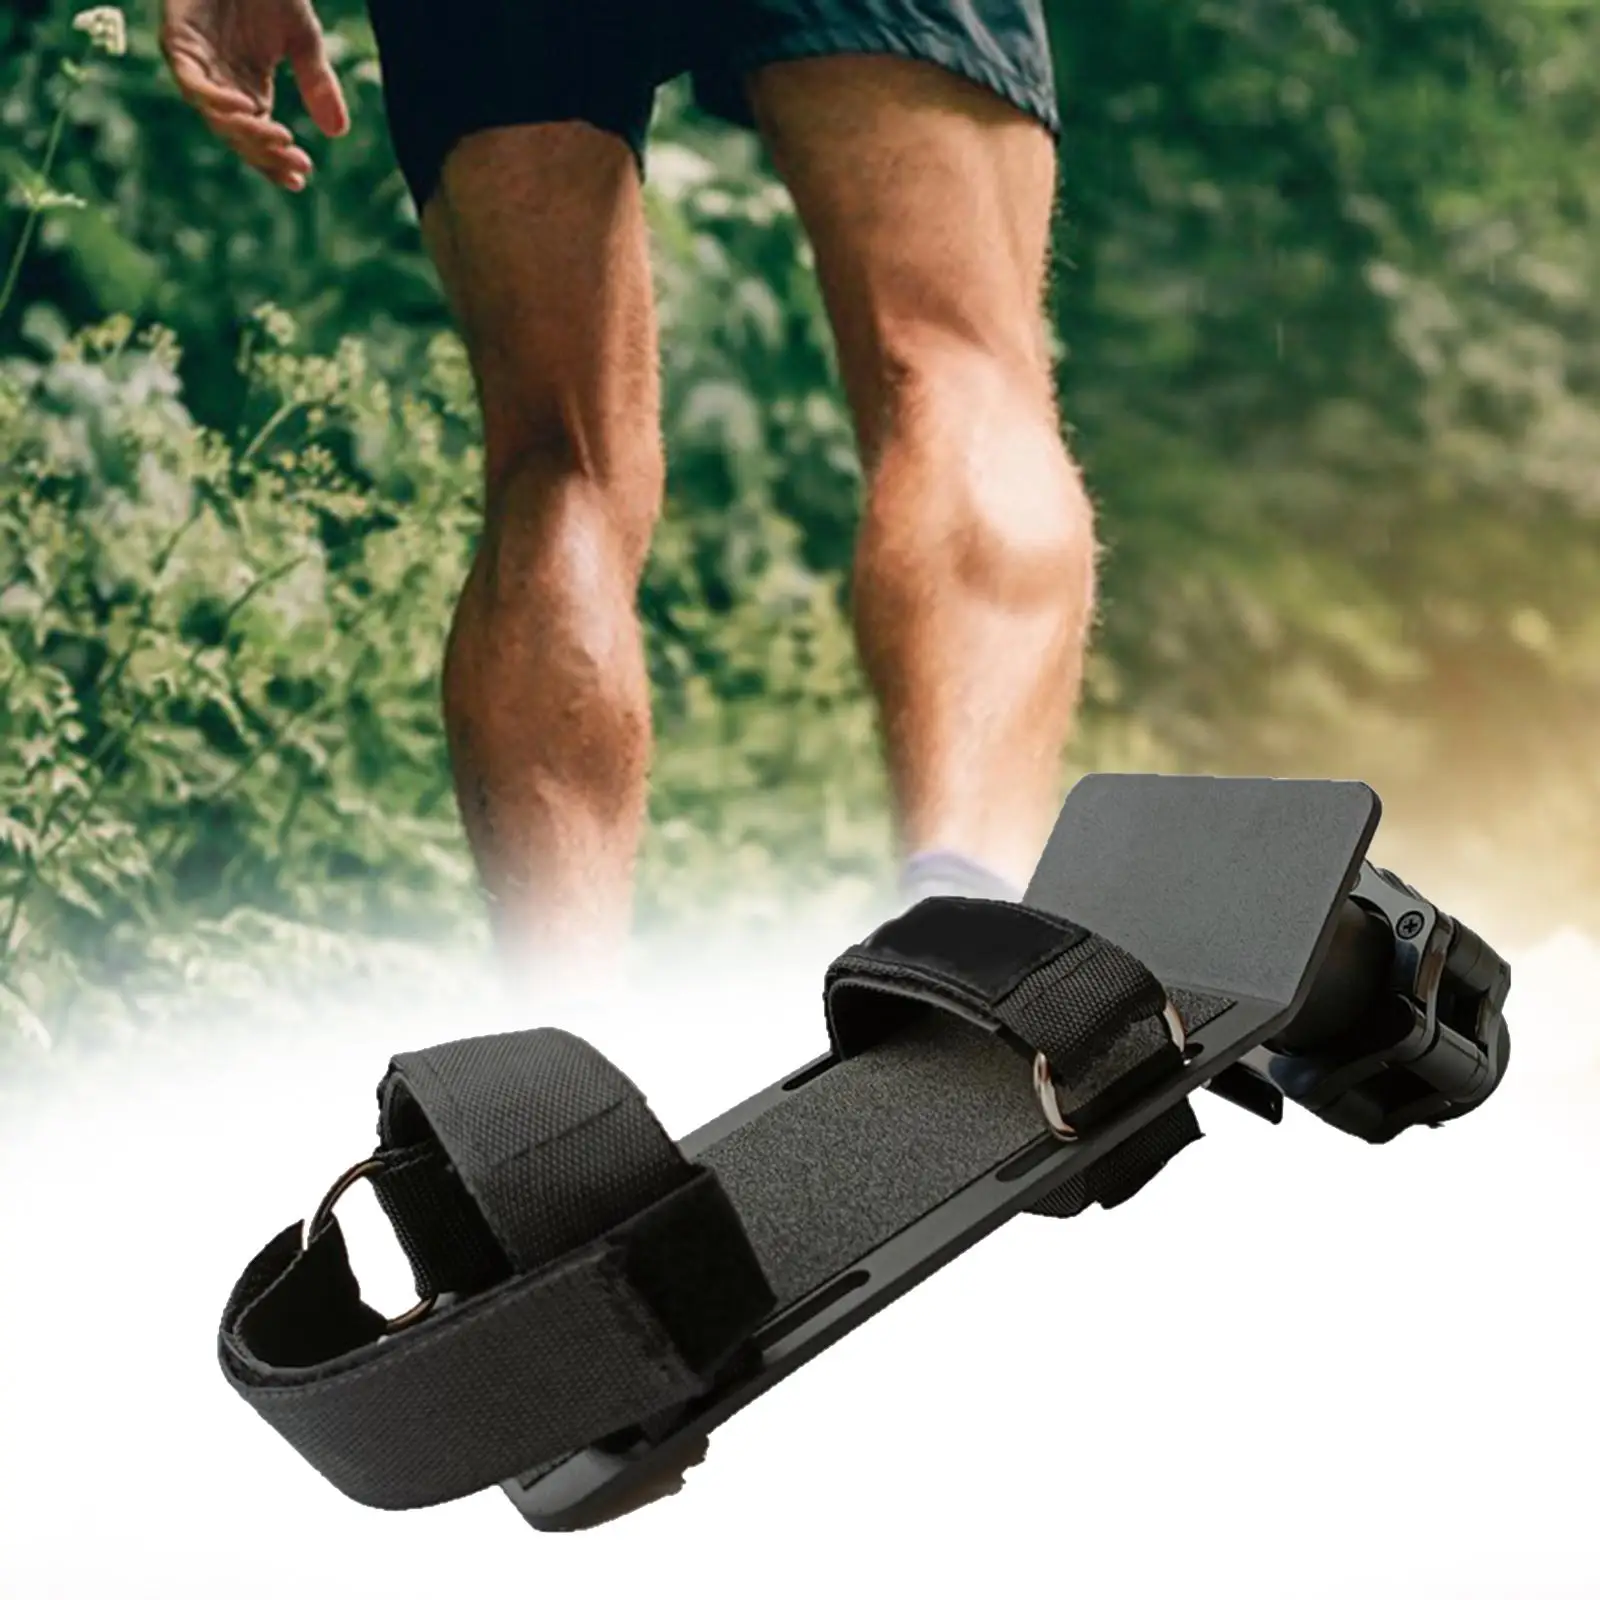 Tibialis Trainer Strength Training Ankle Developer Ankle Calves Leg Extension